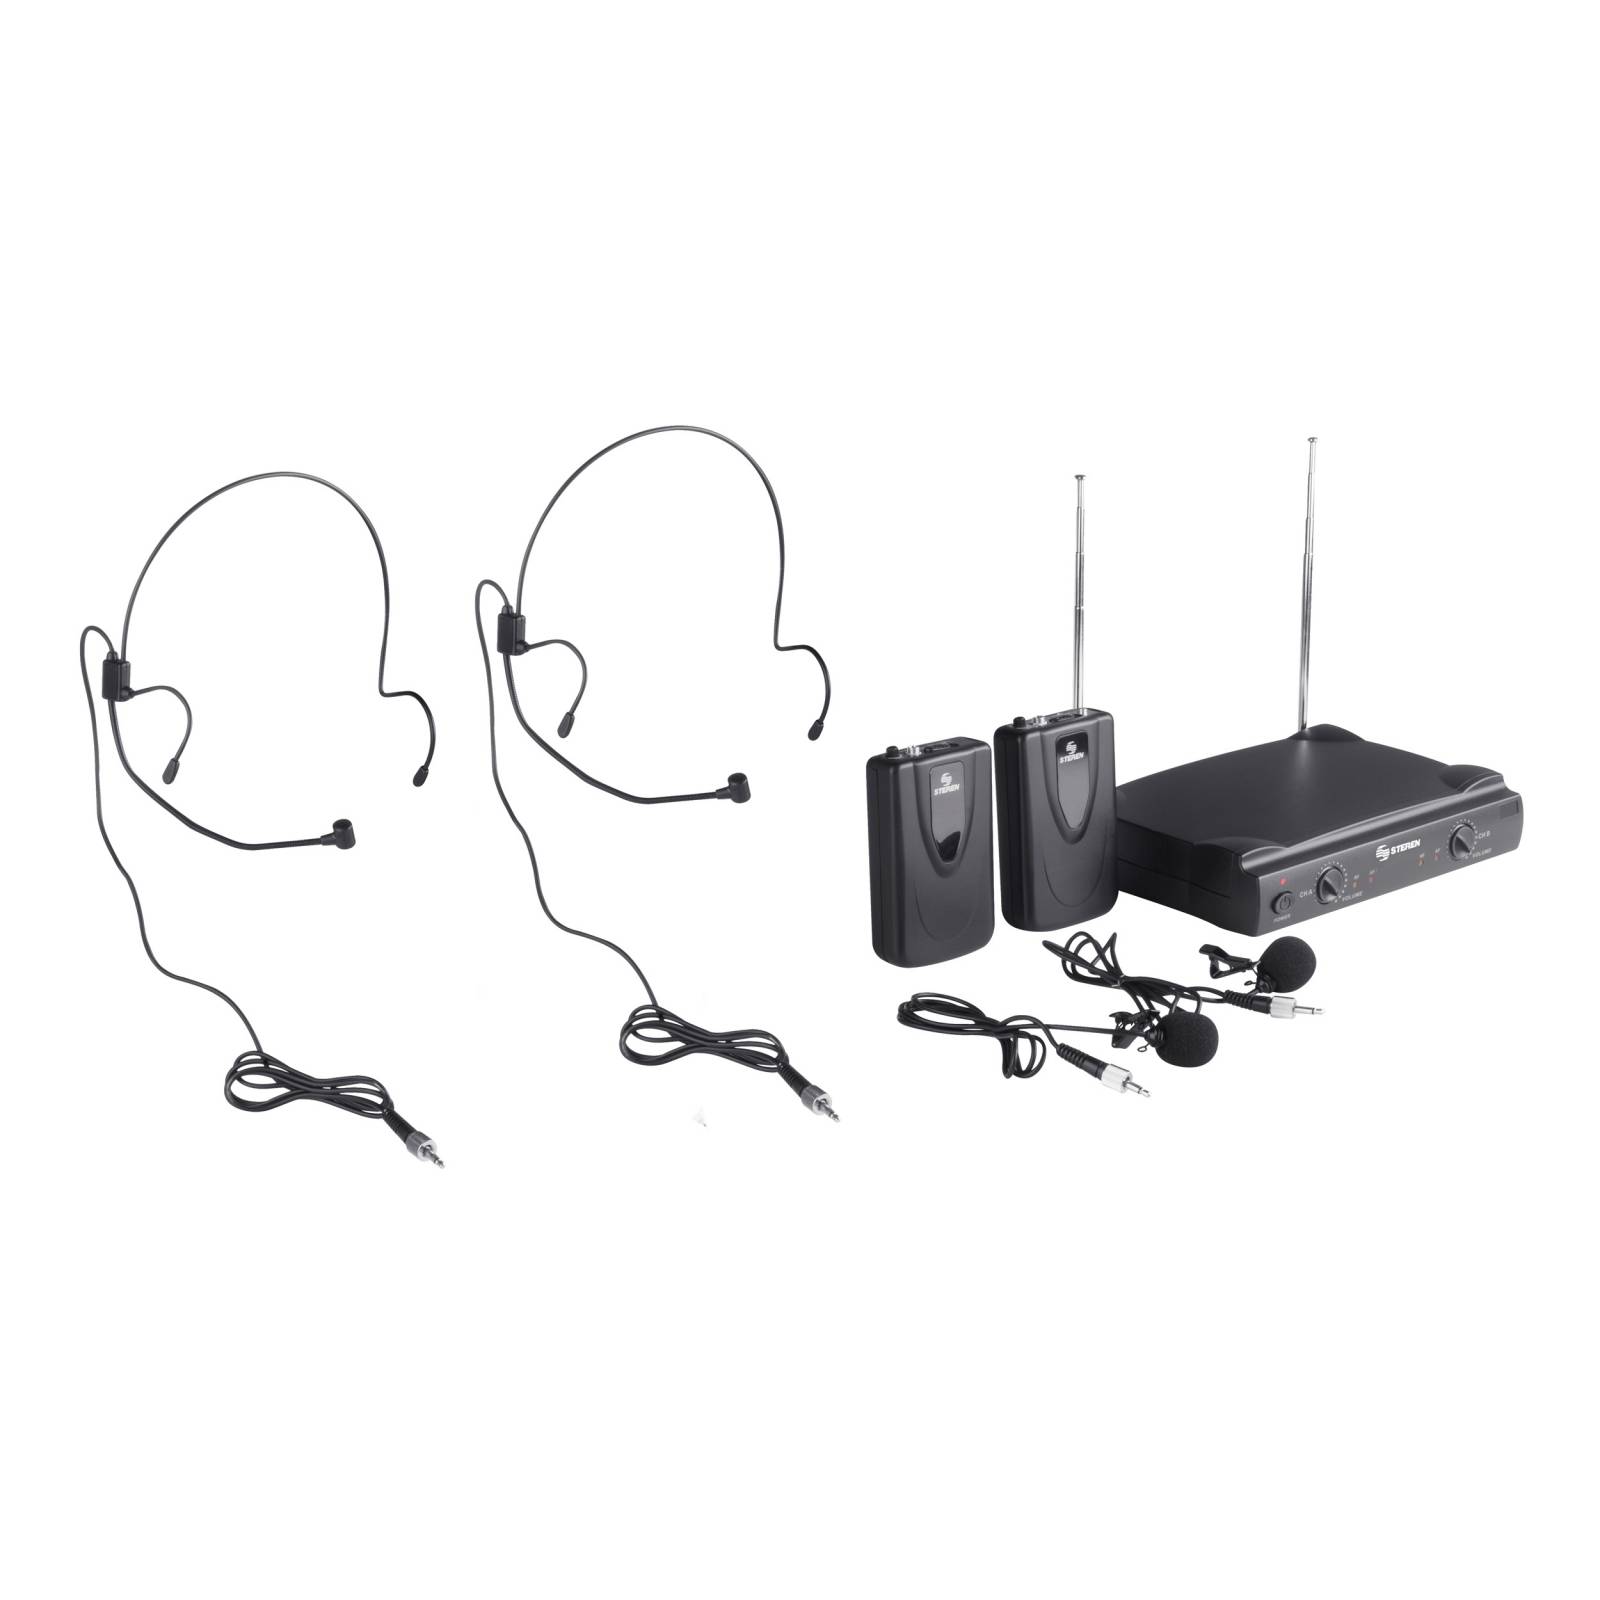 Sistema de 2 micrófonos inalámbricos VHF, de solapa y nuca Wr-058 